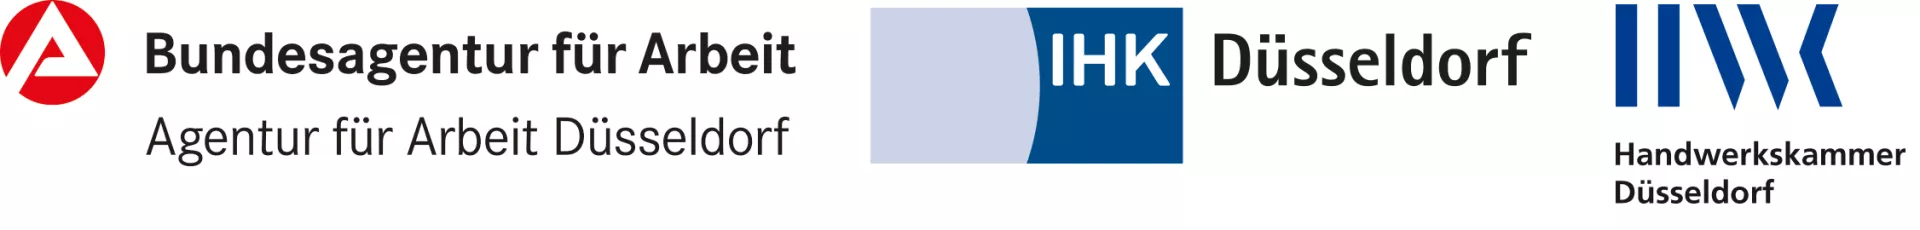 Logos von der Bundesagentur für Arbeit, IHK Düsseldorf und Handwerkskammer Düsseldorf